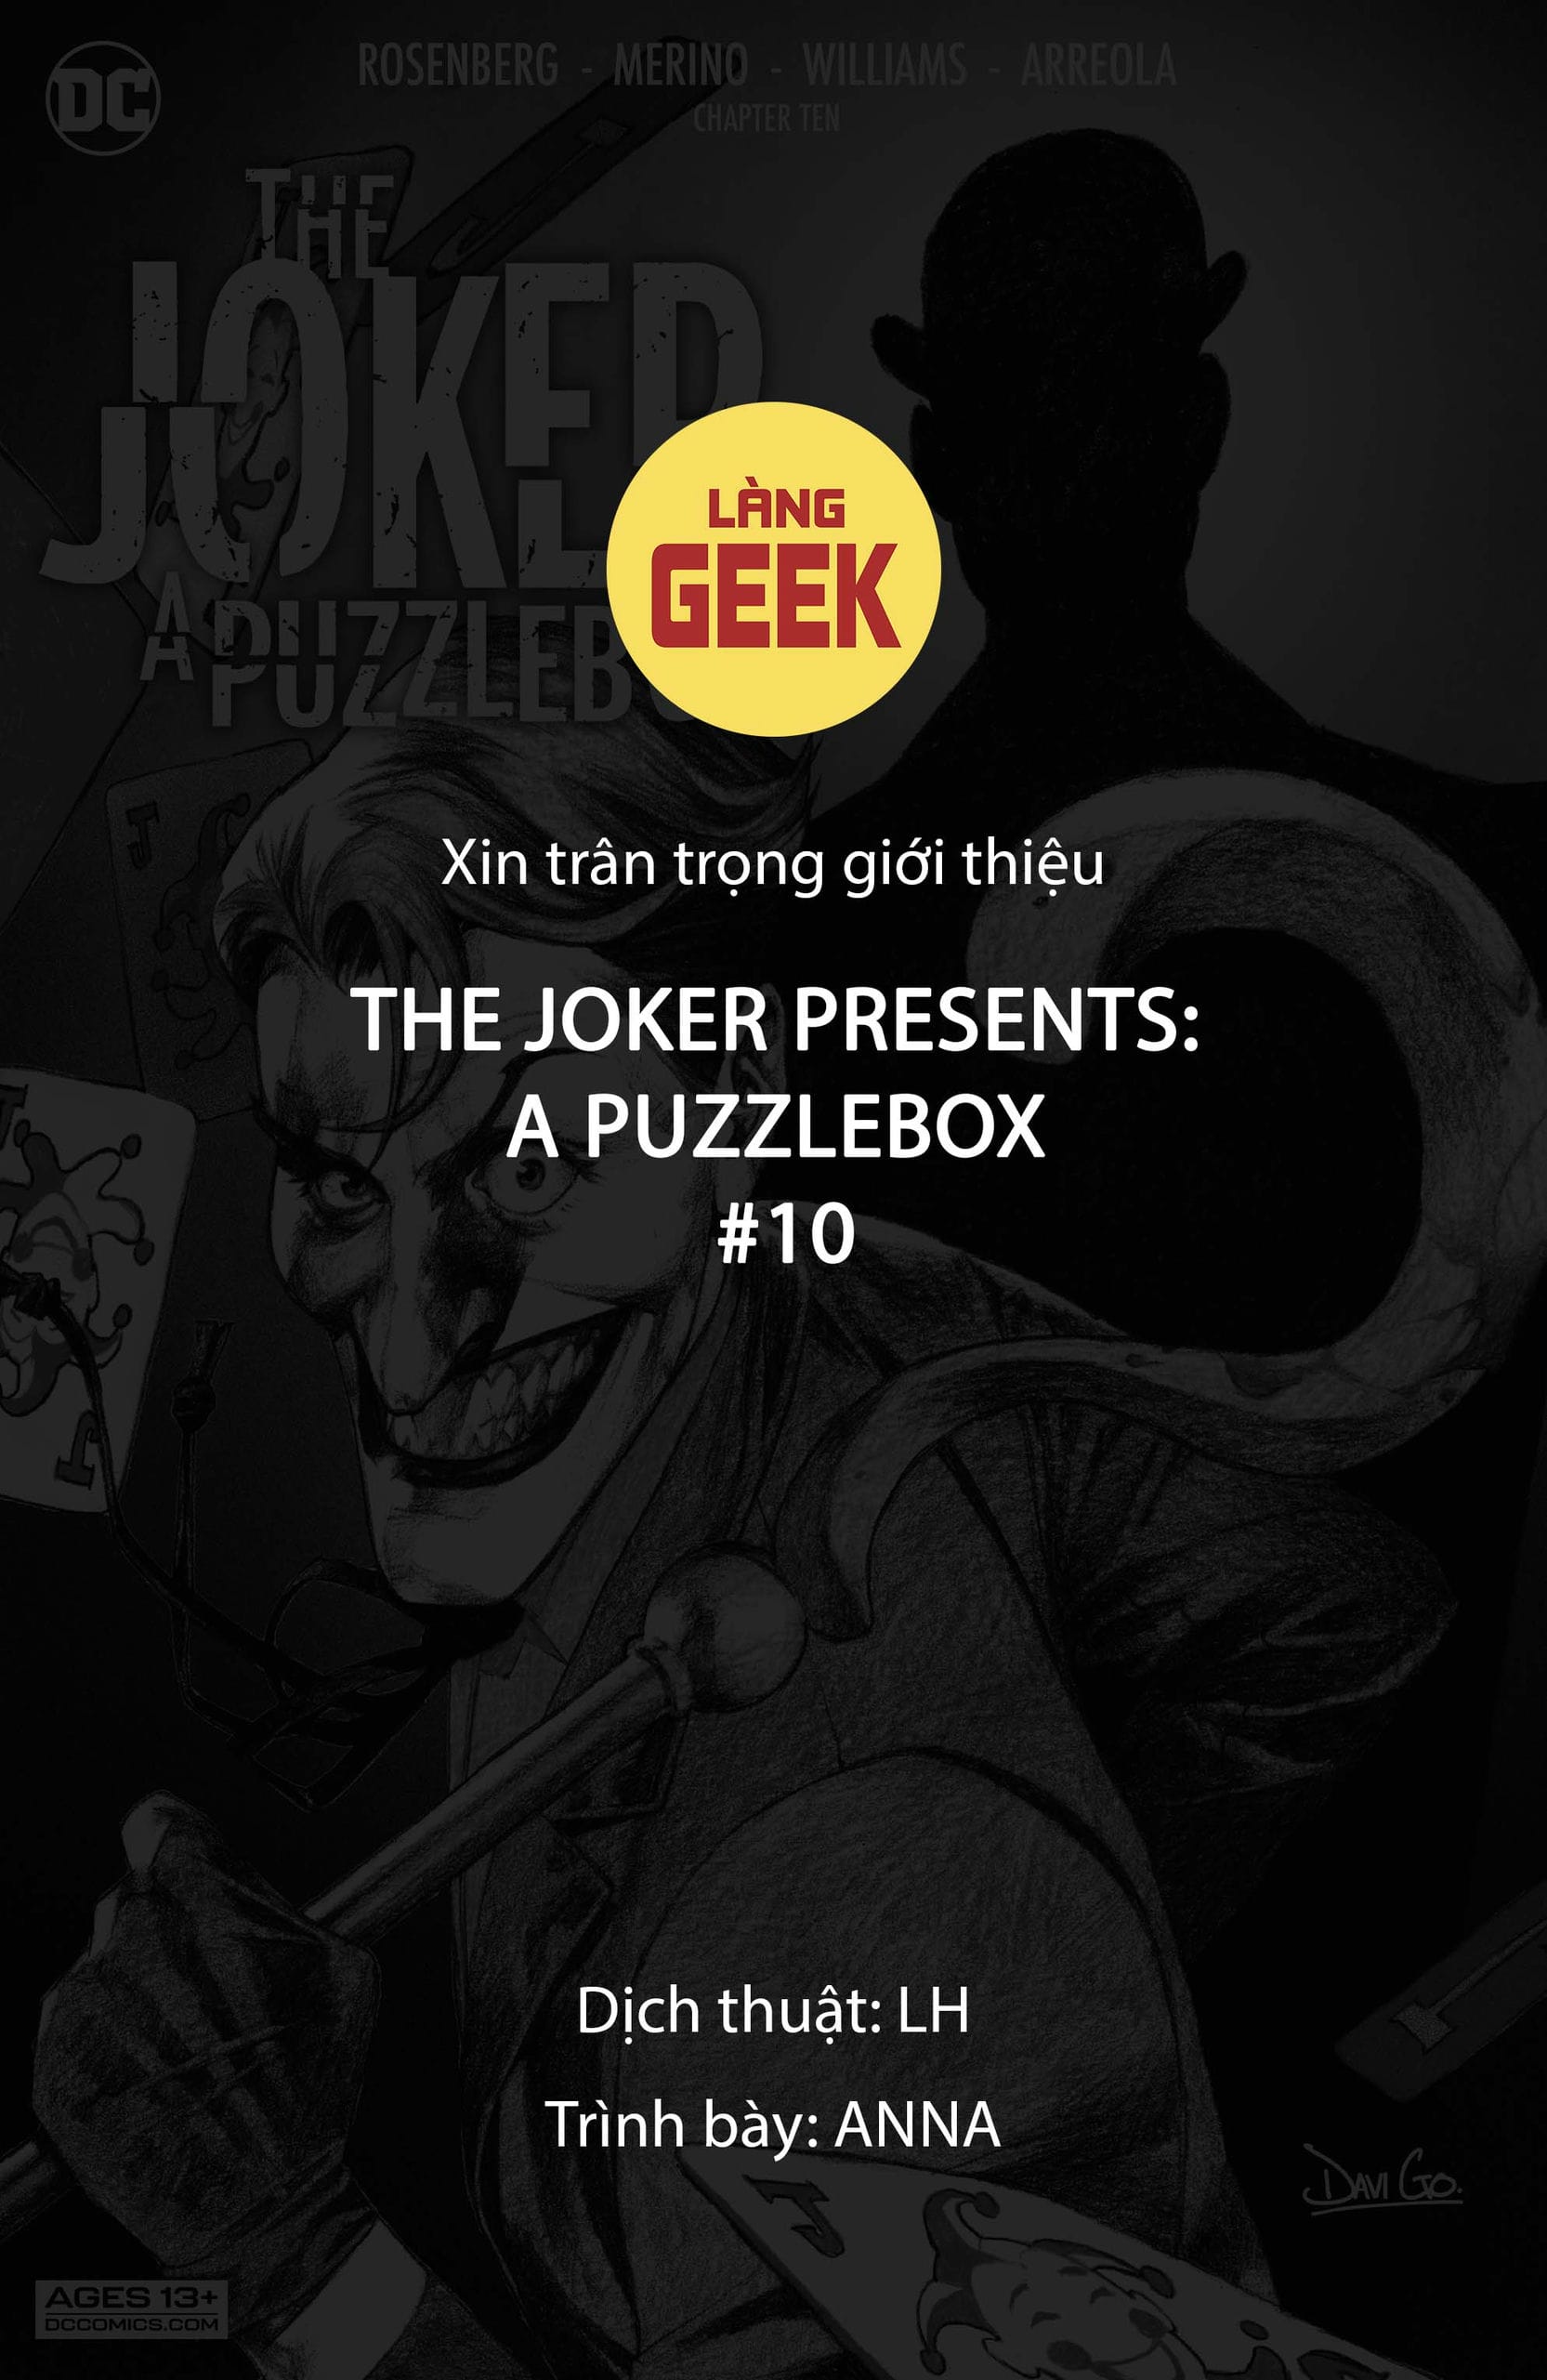 https://langgeek.net/wp-content/webpc-passthru.php?src=https://langgeek.net/wp-content/uploads/2023/01/The-Joker-Presents-A-Puzzlebox-Director_s-Cut-010-000-1.jpg&nocache=1